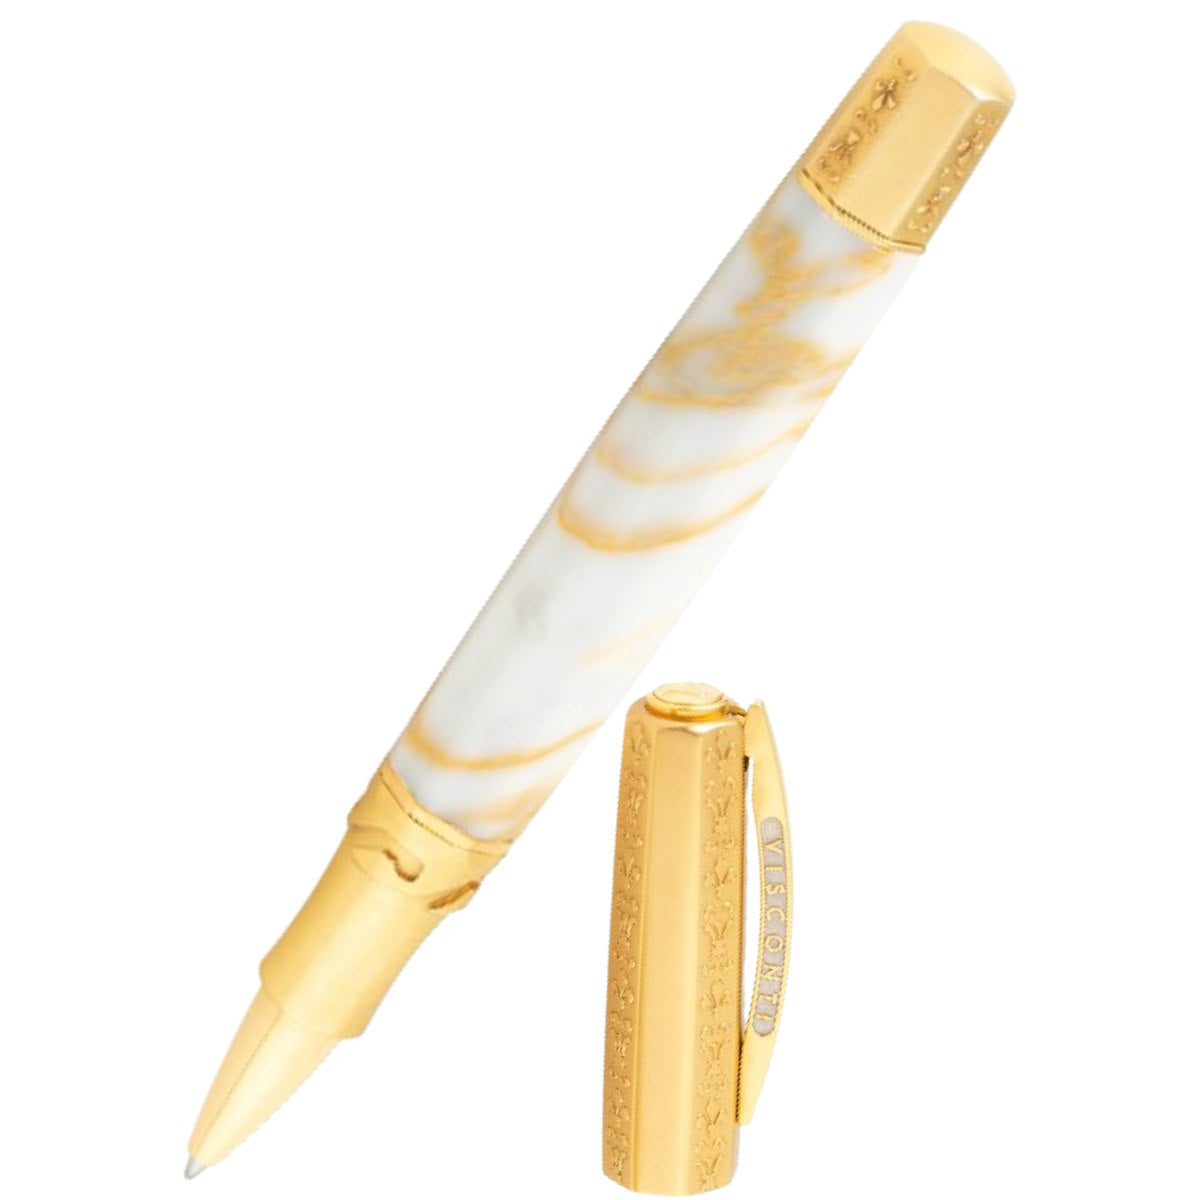 Visconti Il Magnifico Calacatta Gold Rollerball Pen (Limited Edition)-Pen Boutique Ltd